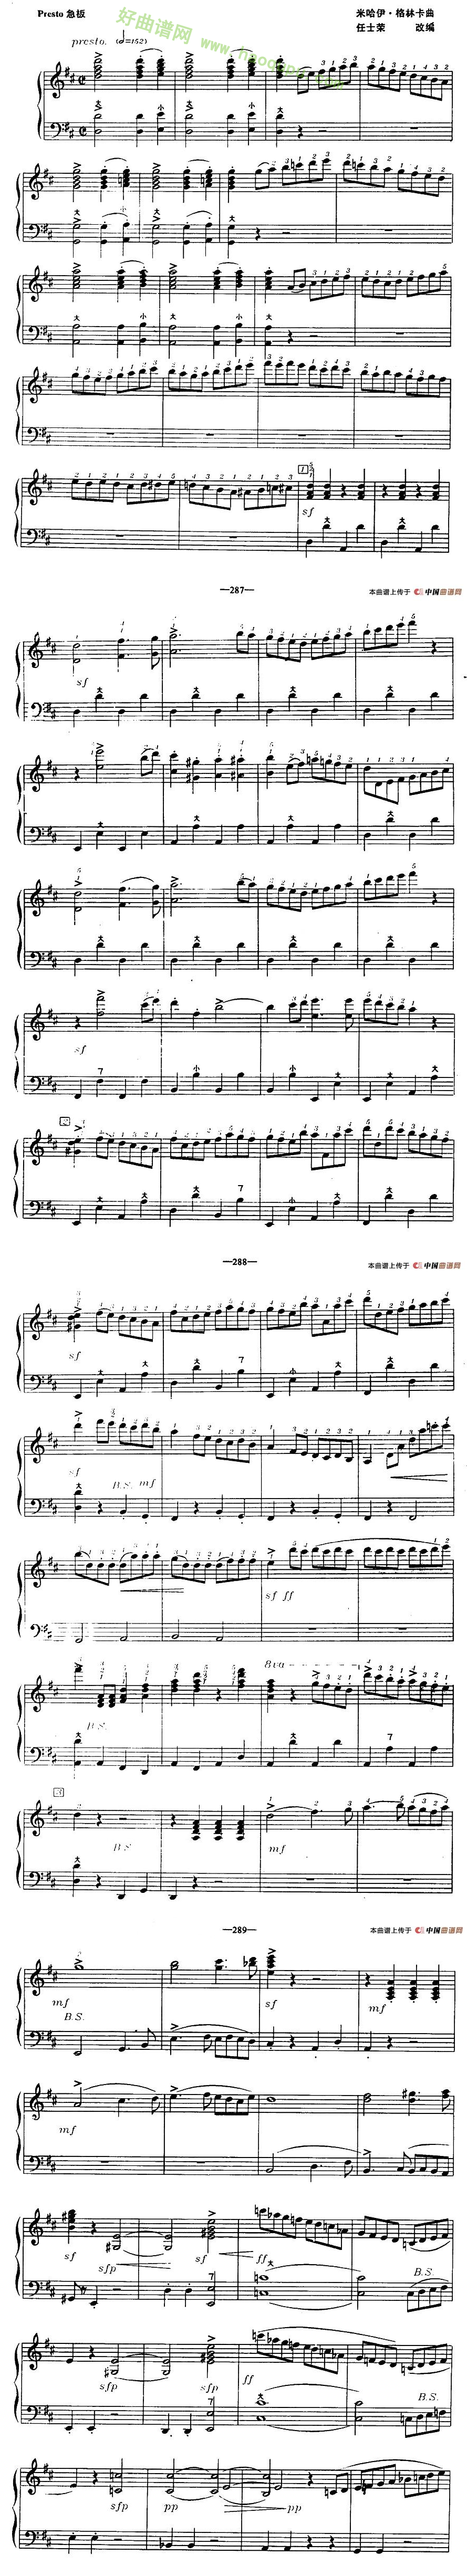 《鲁斯兰与柳德米拉》序曲手风琴曲谱第1张